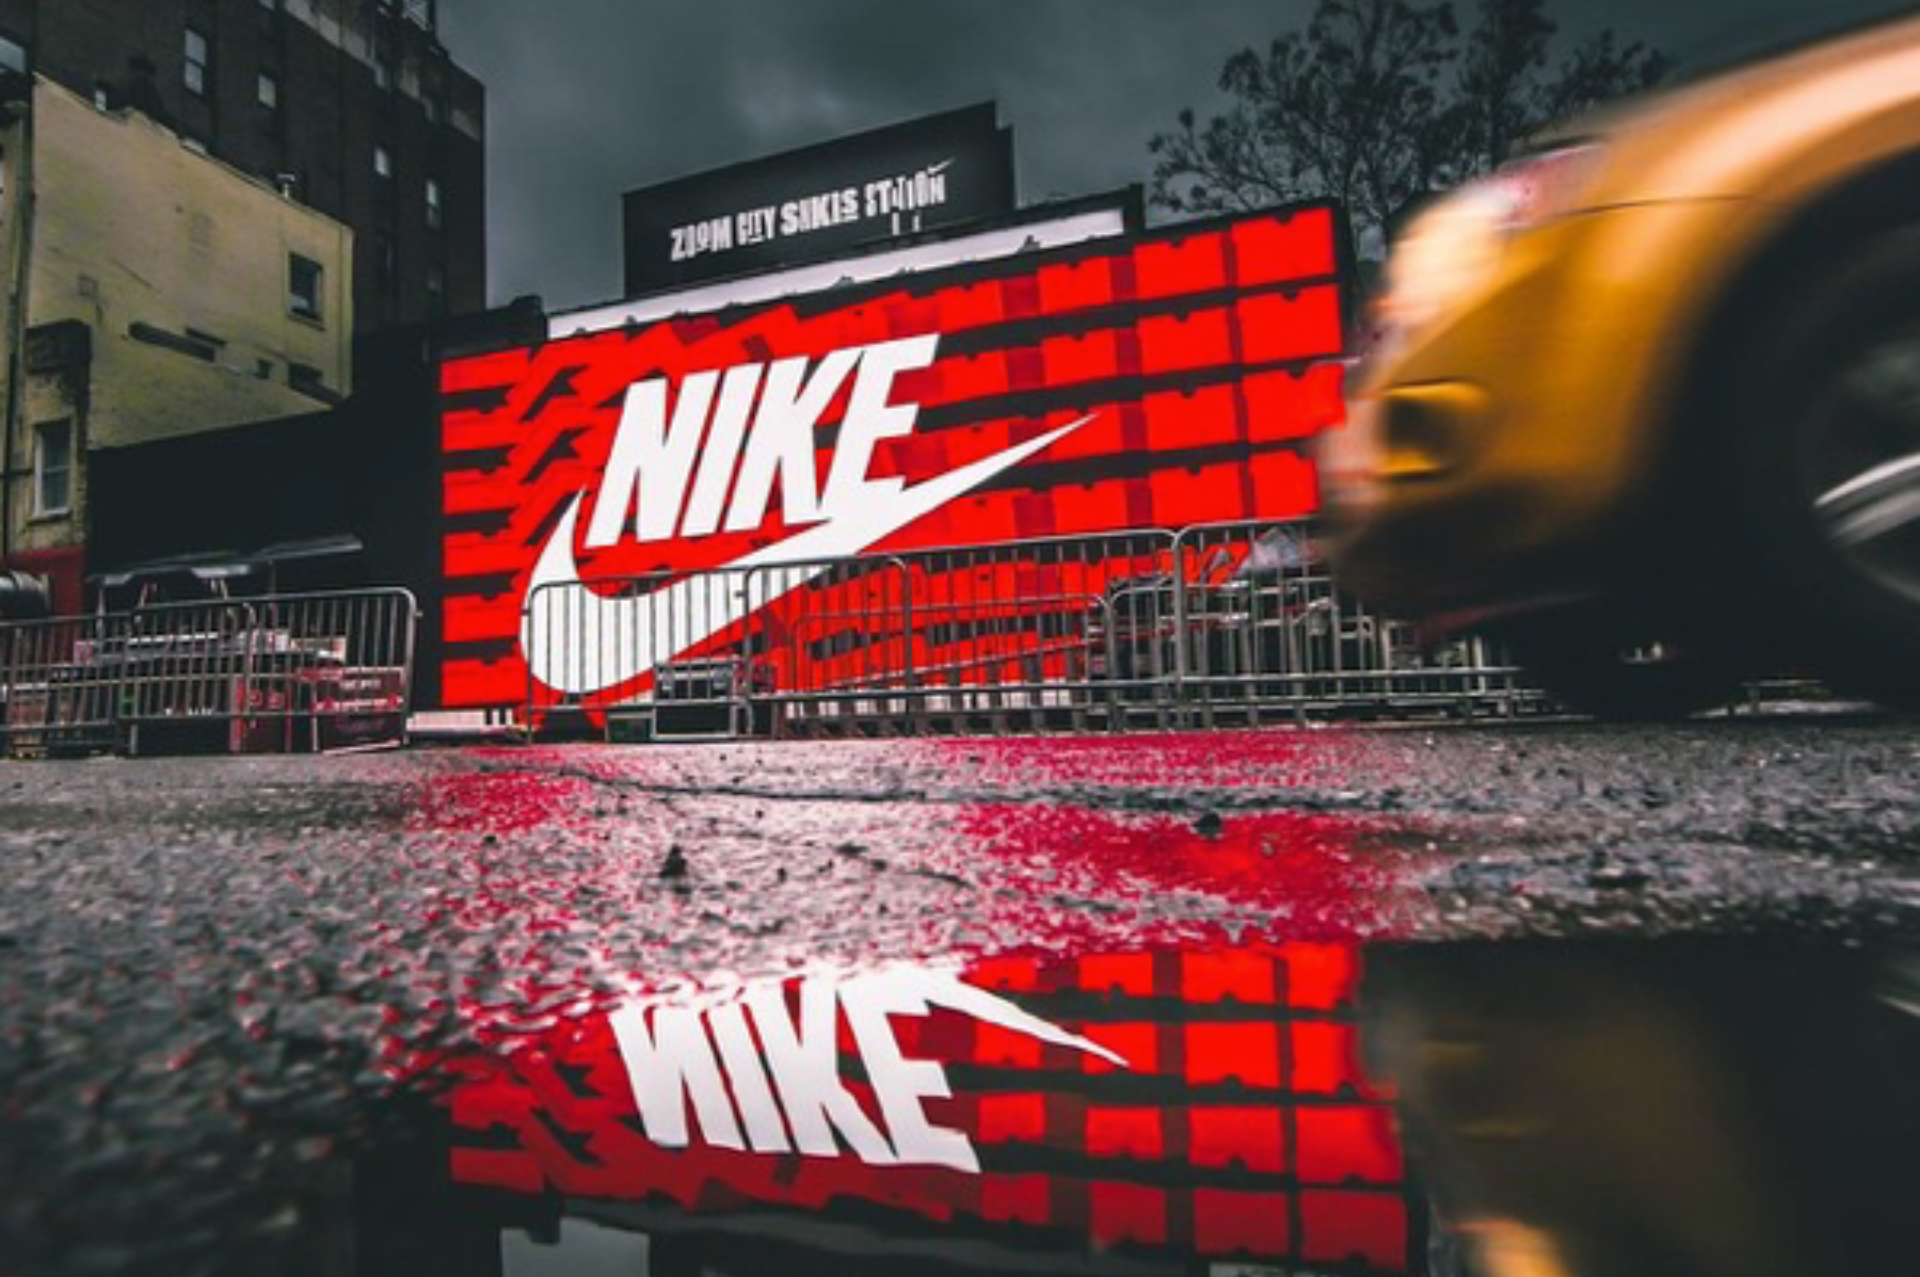 swoosh: La historia detr%C3%A1s del ic%C3%B3nico logotipo de Nike